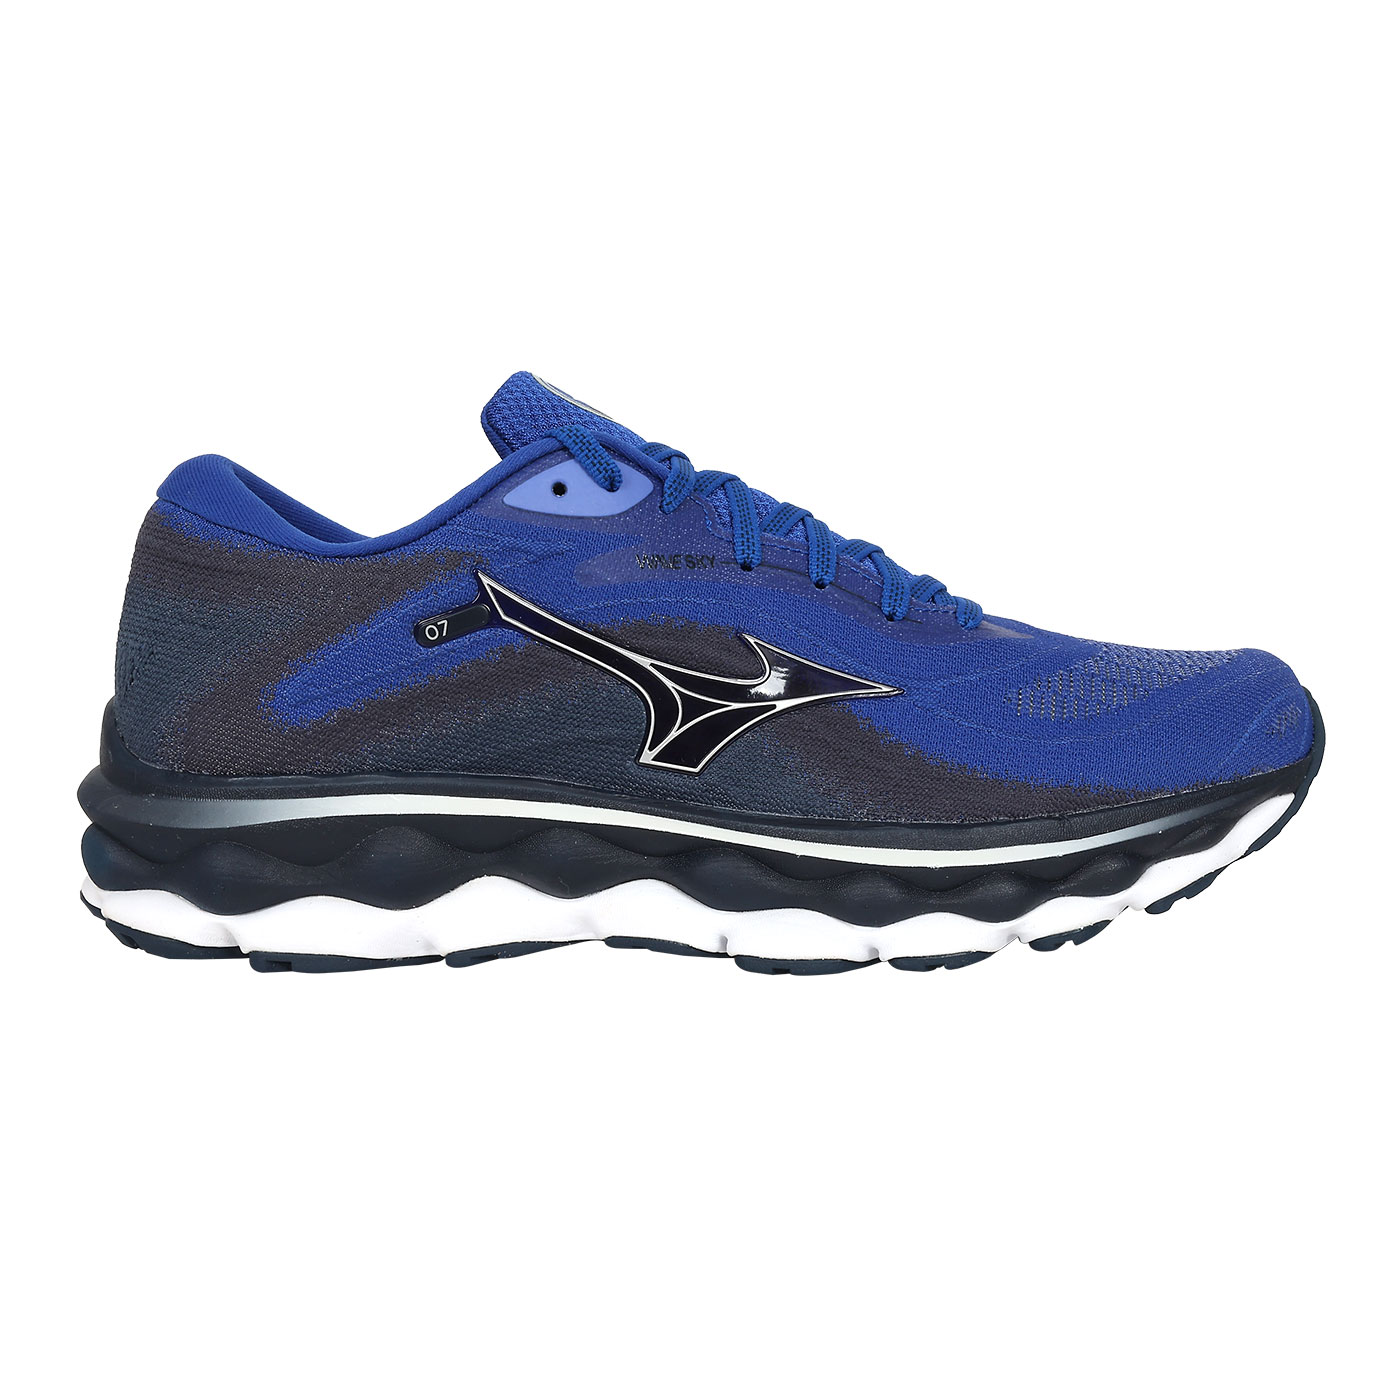 MIZUNO 男款慢跑鞋  @WAVE SKY 7@ J1GC230254 - 深藍灰靛藍